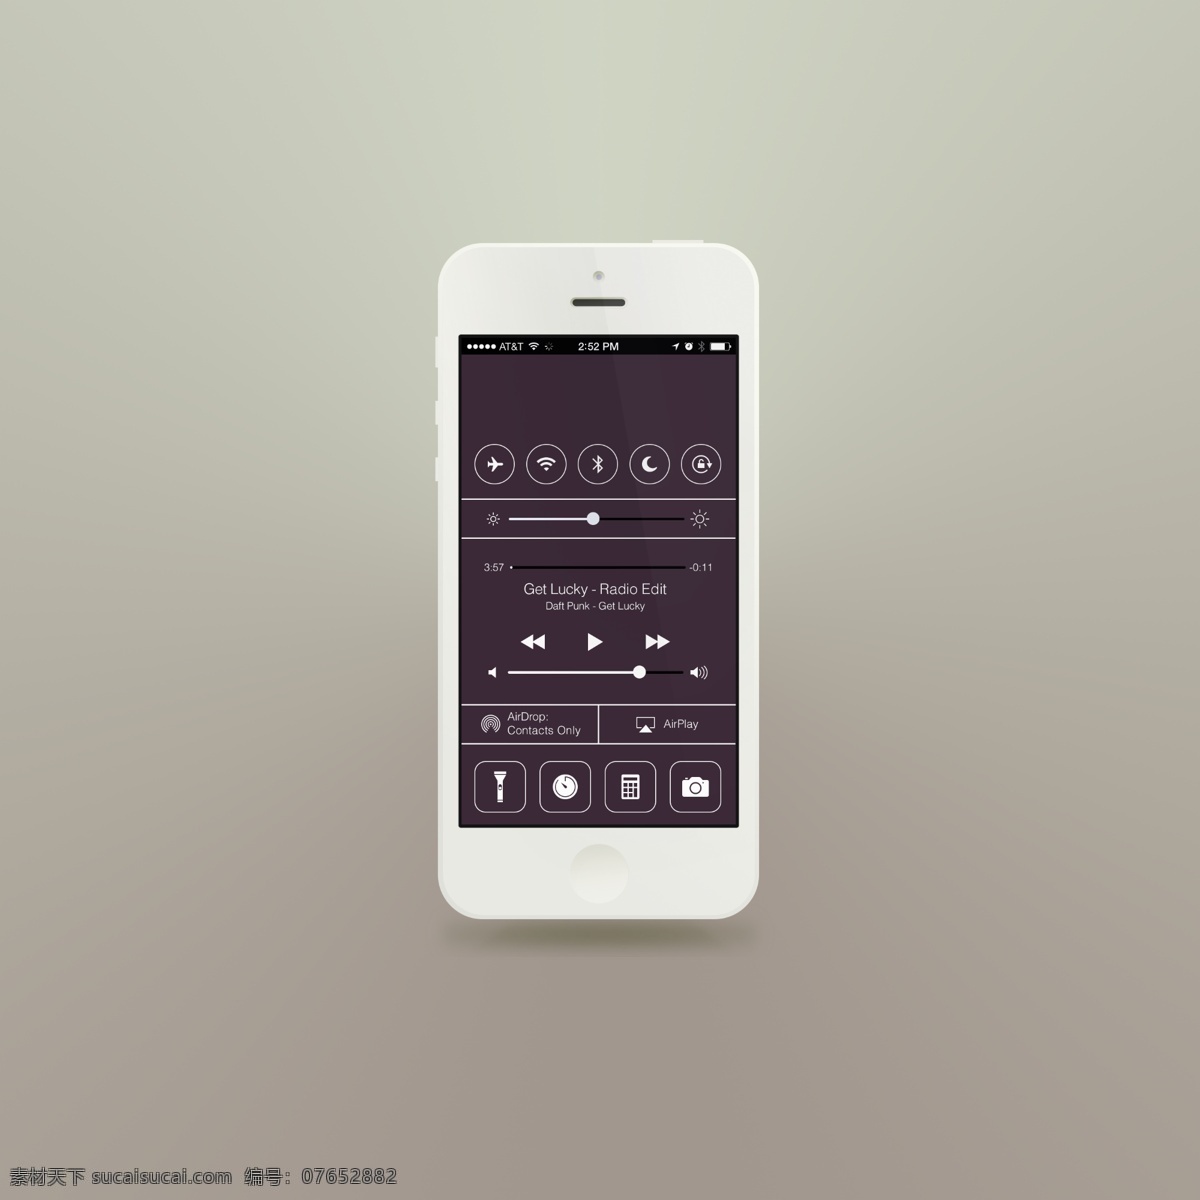 扁平 风格 手机 模板 iphone 状态 栏 模型 扁平ui素材 手机展示素材 微投影 状态栏 ui设计 app 界面设计